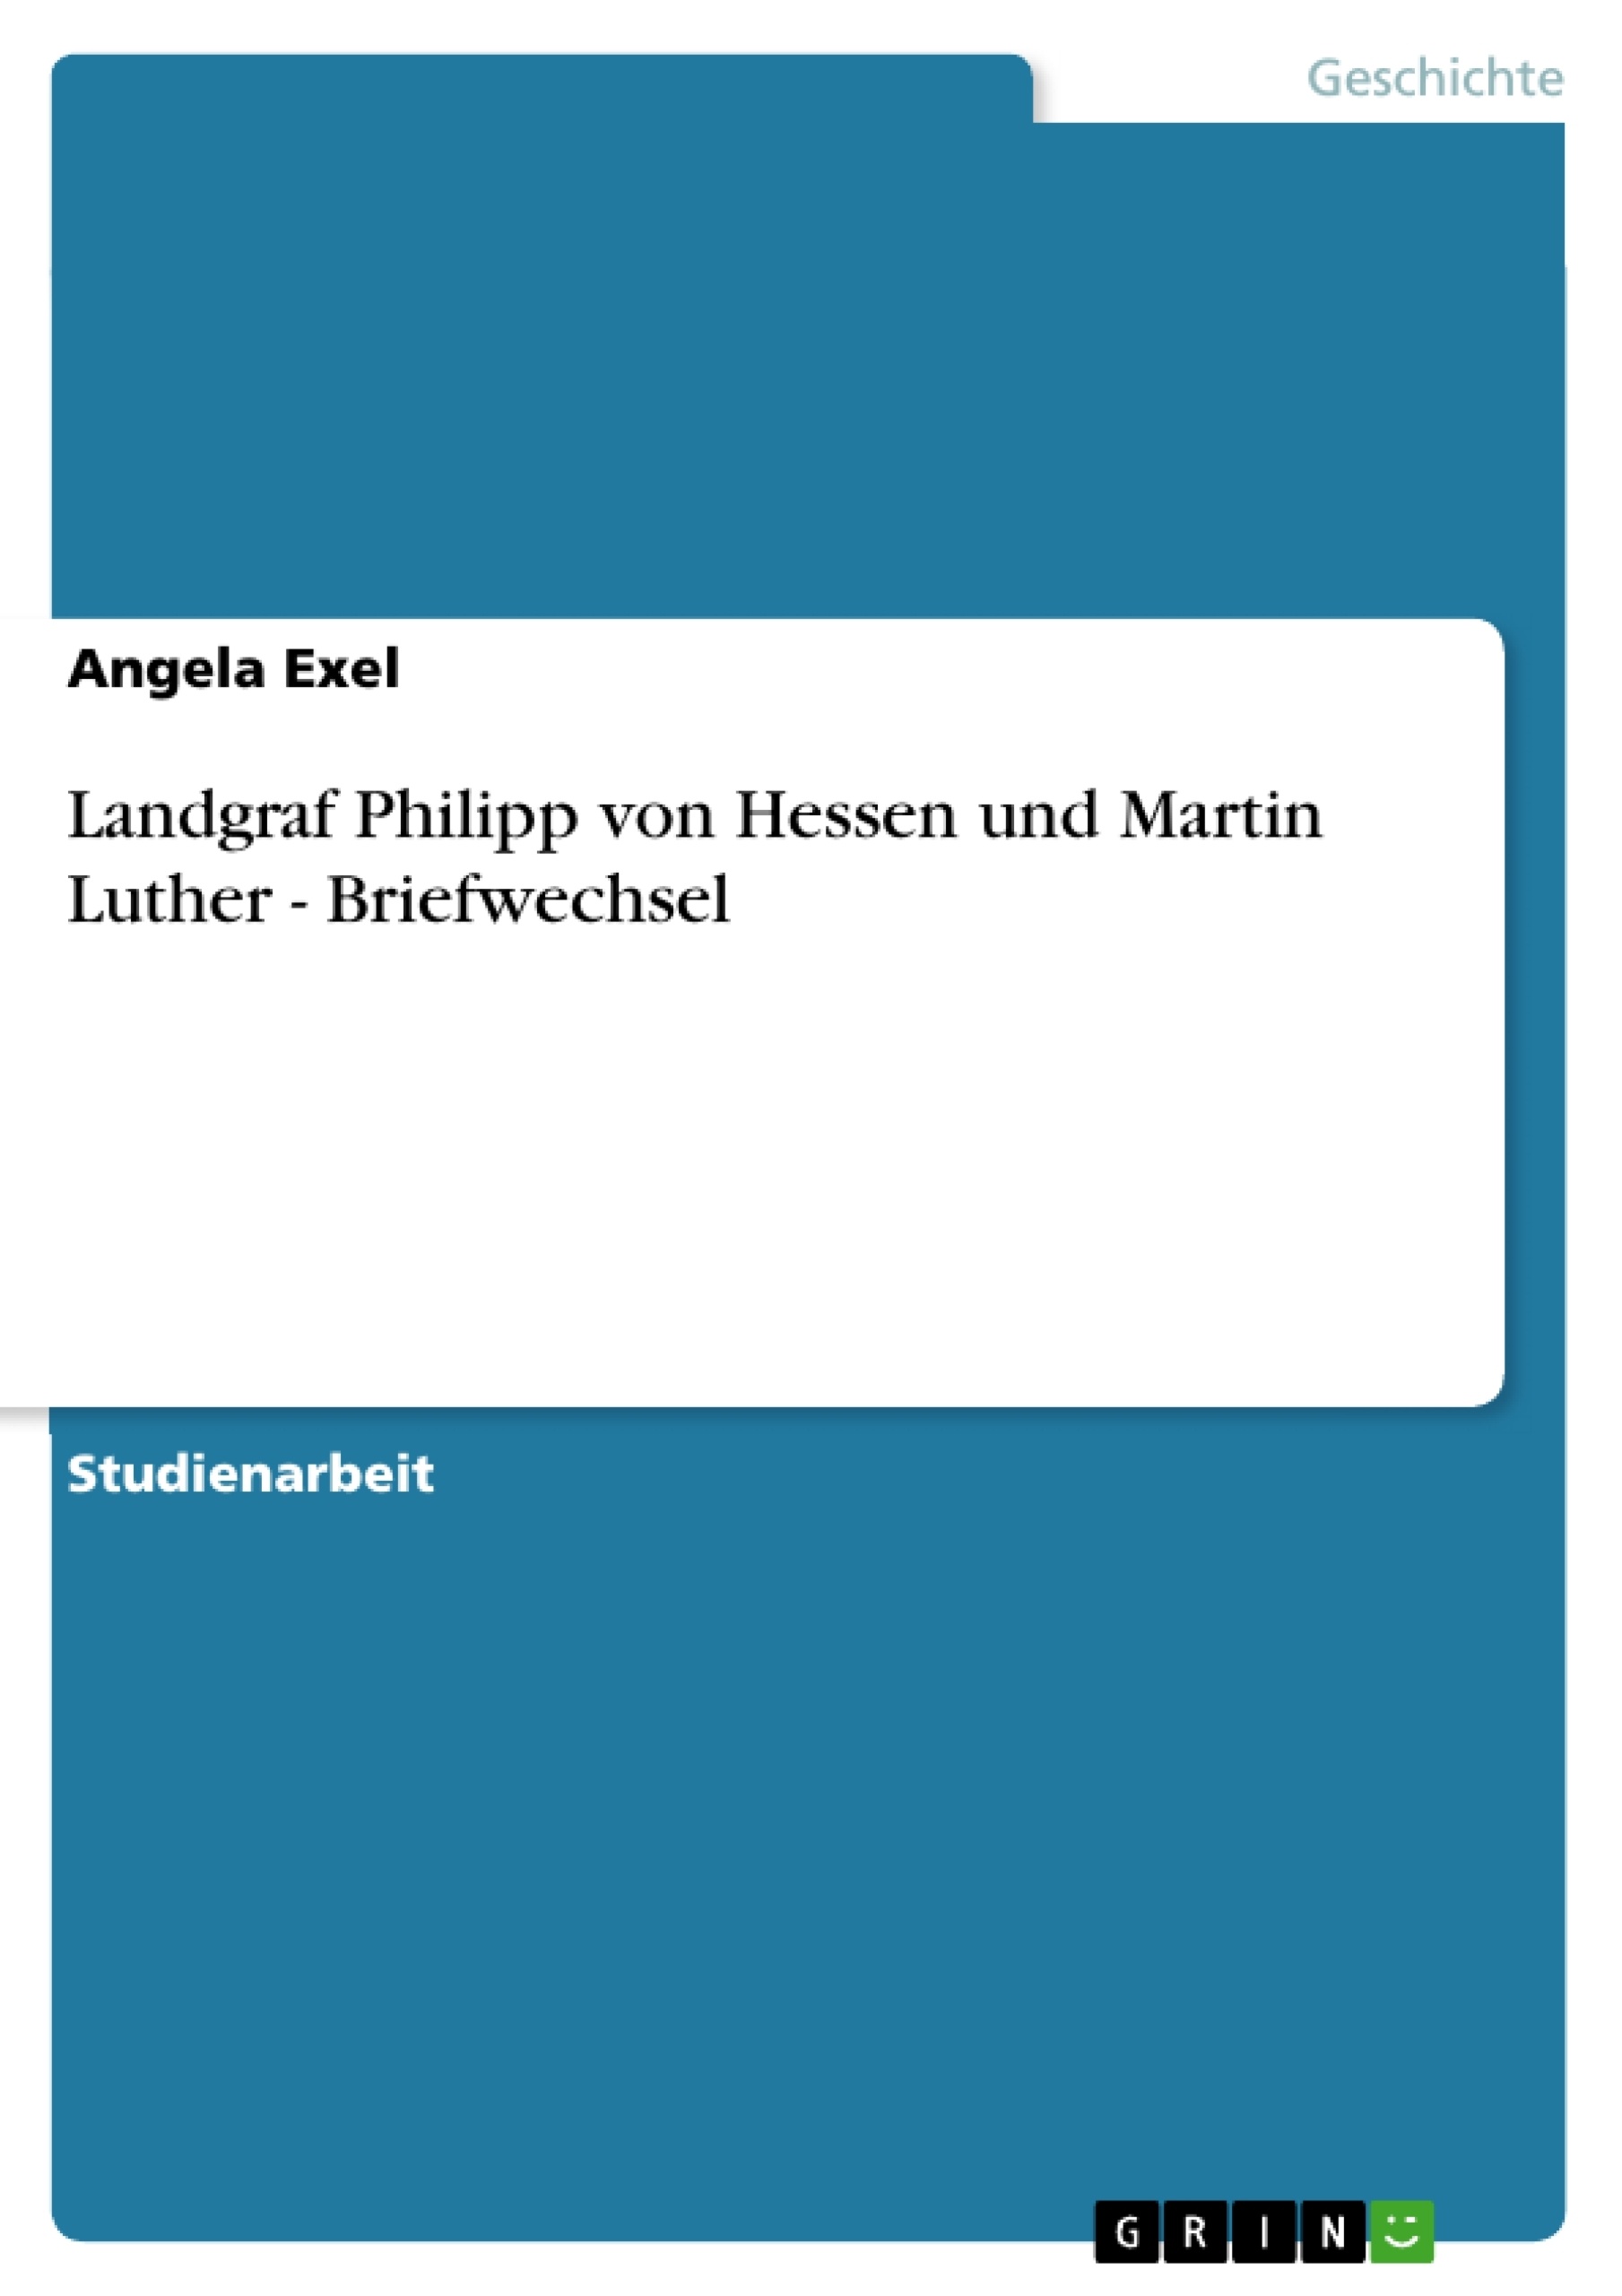 Title: Landgraf Philipp von Hessen und Martin Luther - Briefwechsel